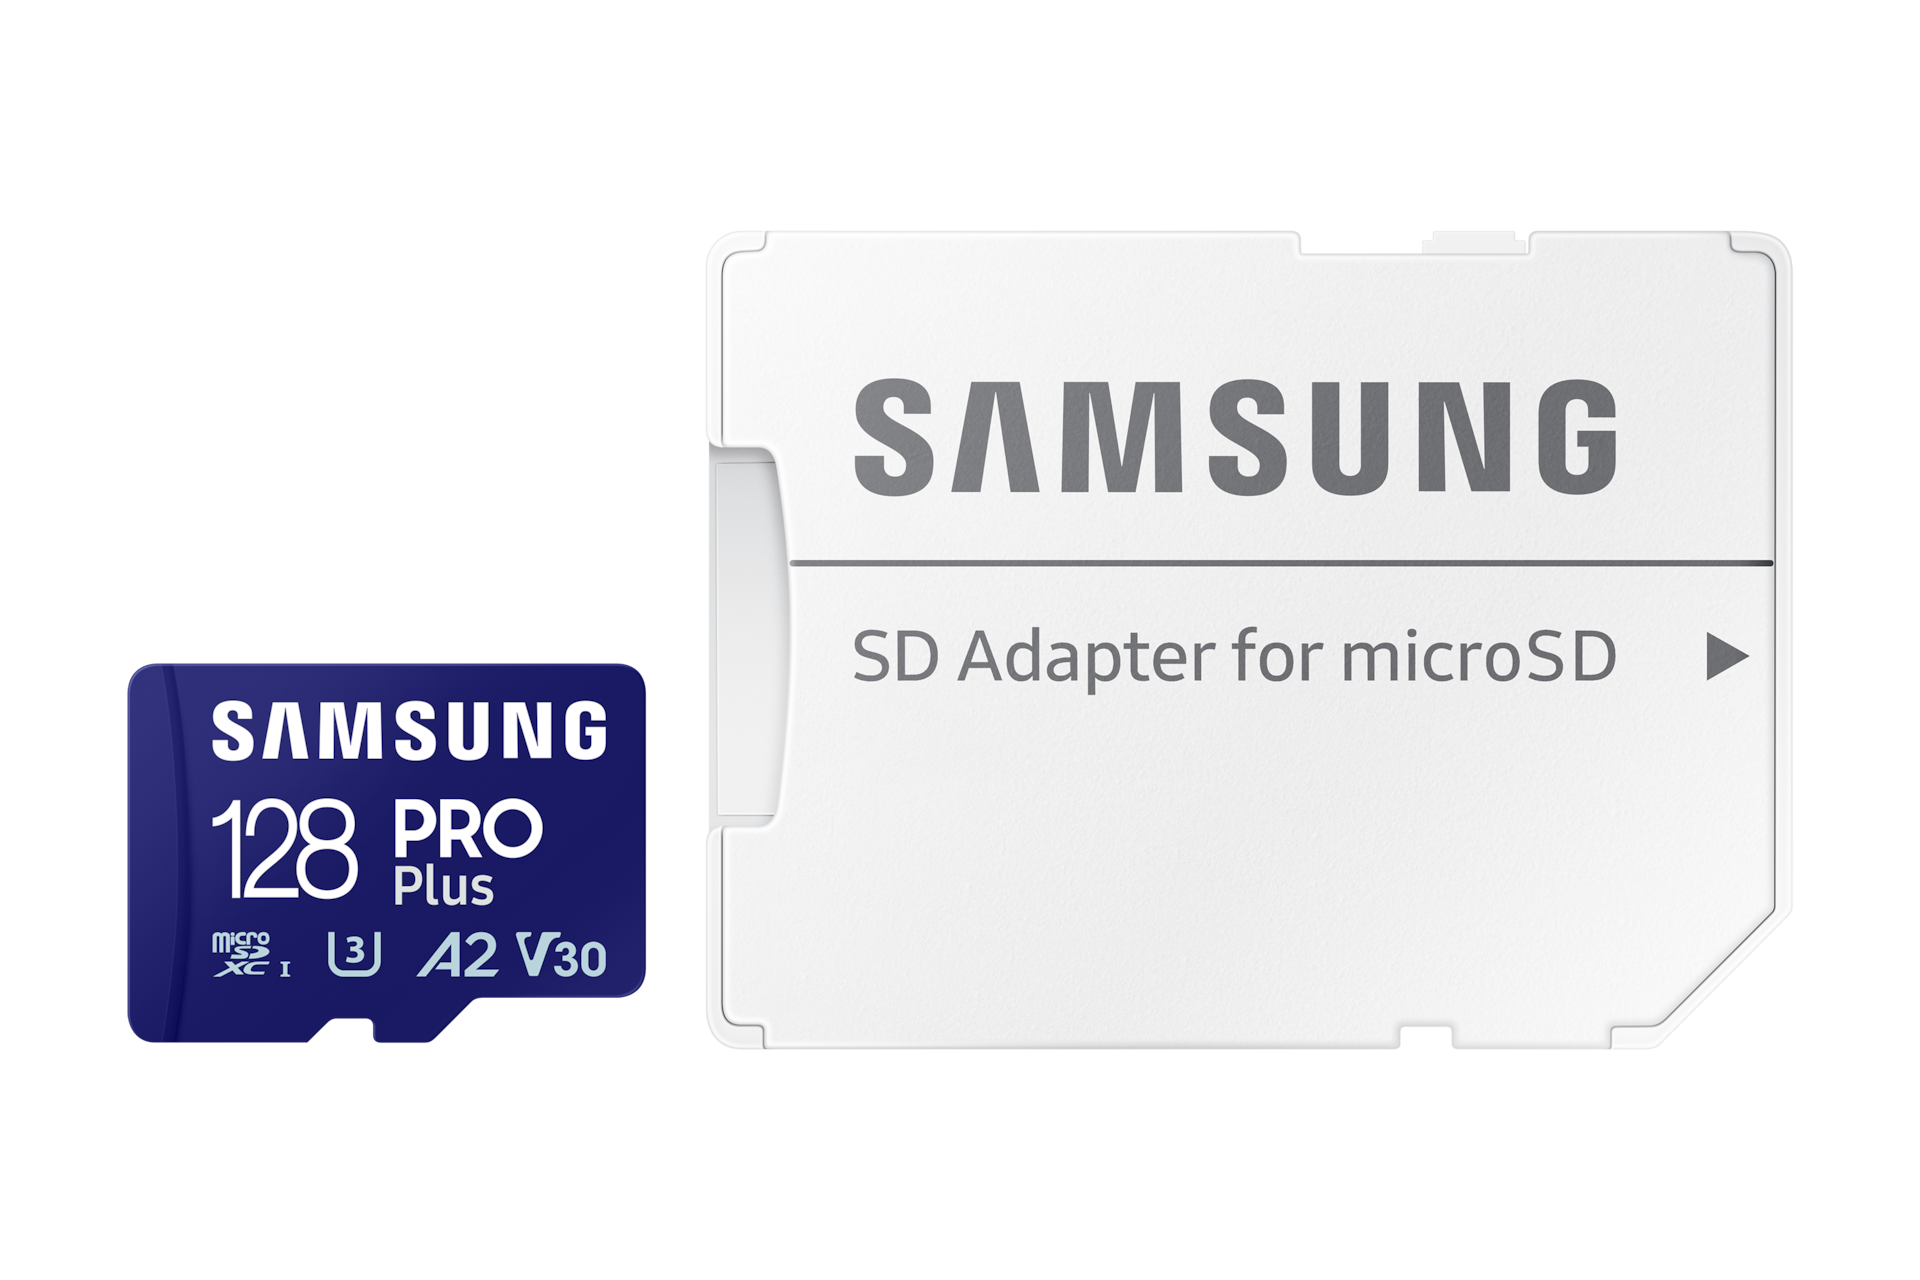 PRO Plus 마이크로SD 메모리카드 128 GB 제품 이미지 + 패키지